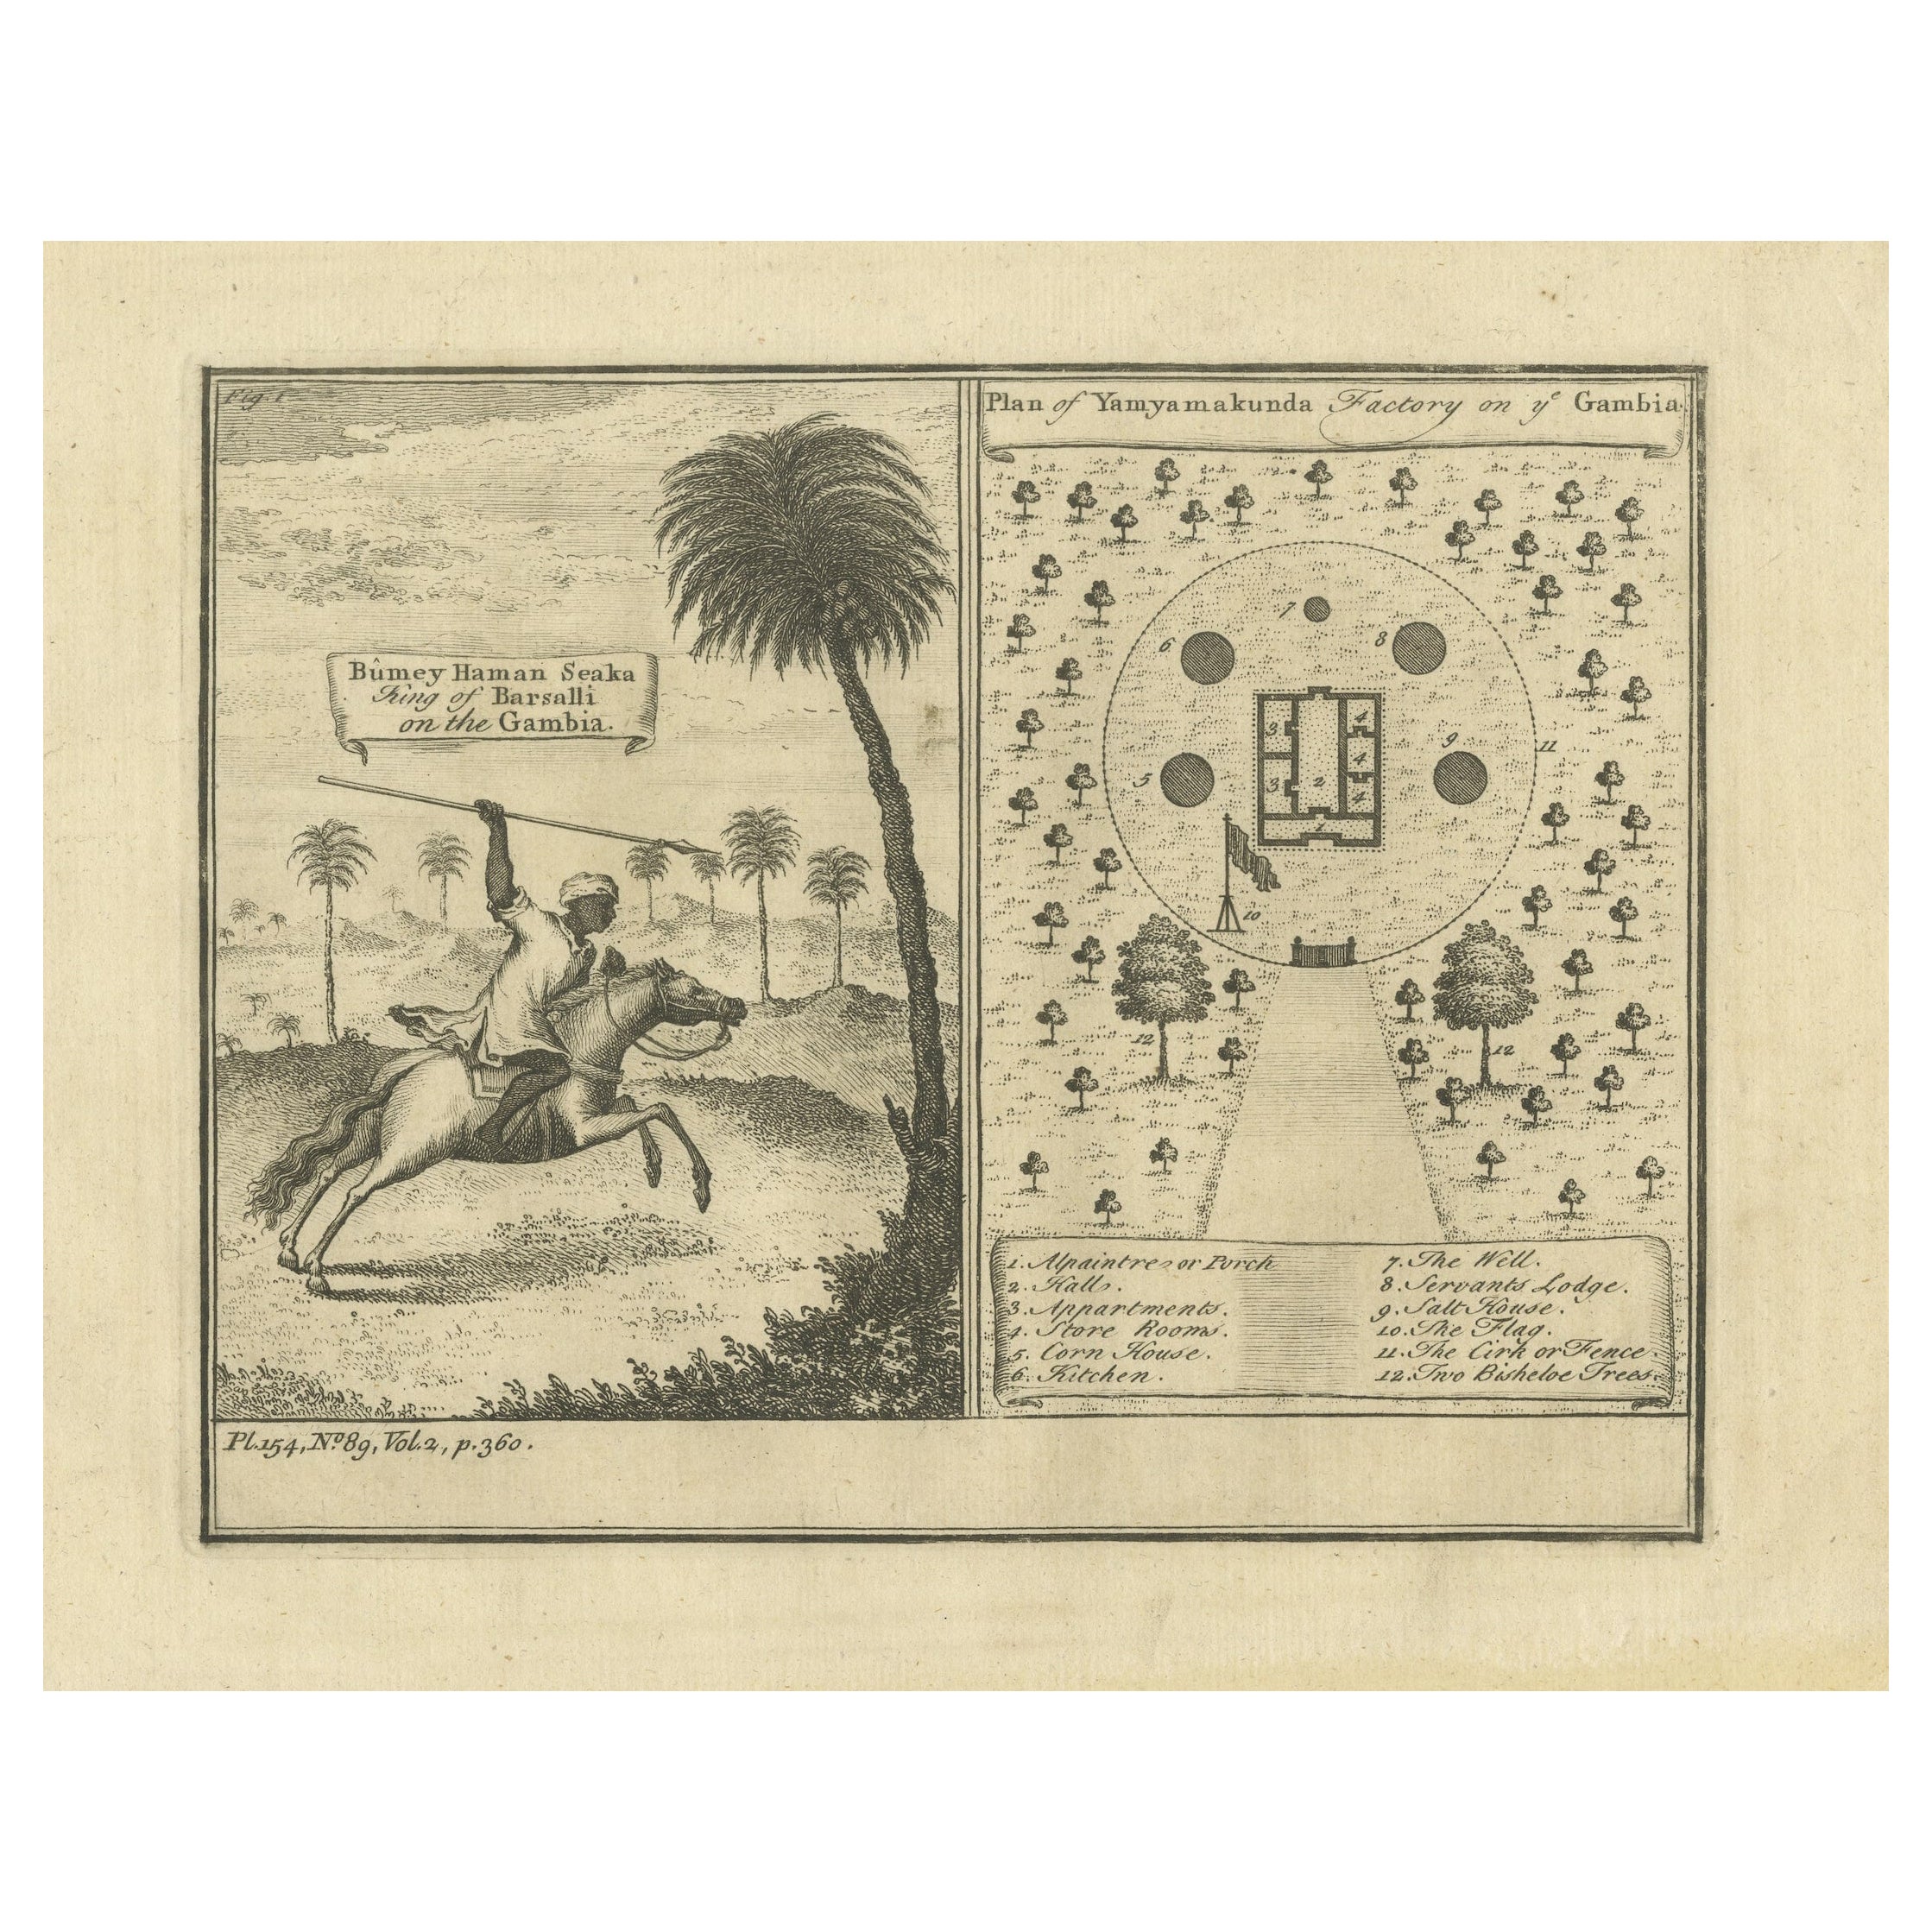 Antiker Druck des Königs von Barsalli und der Yamyamakunda-Fabrik, Gabun, um 1730